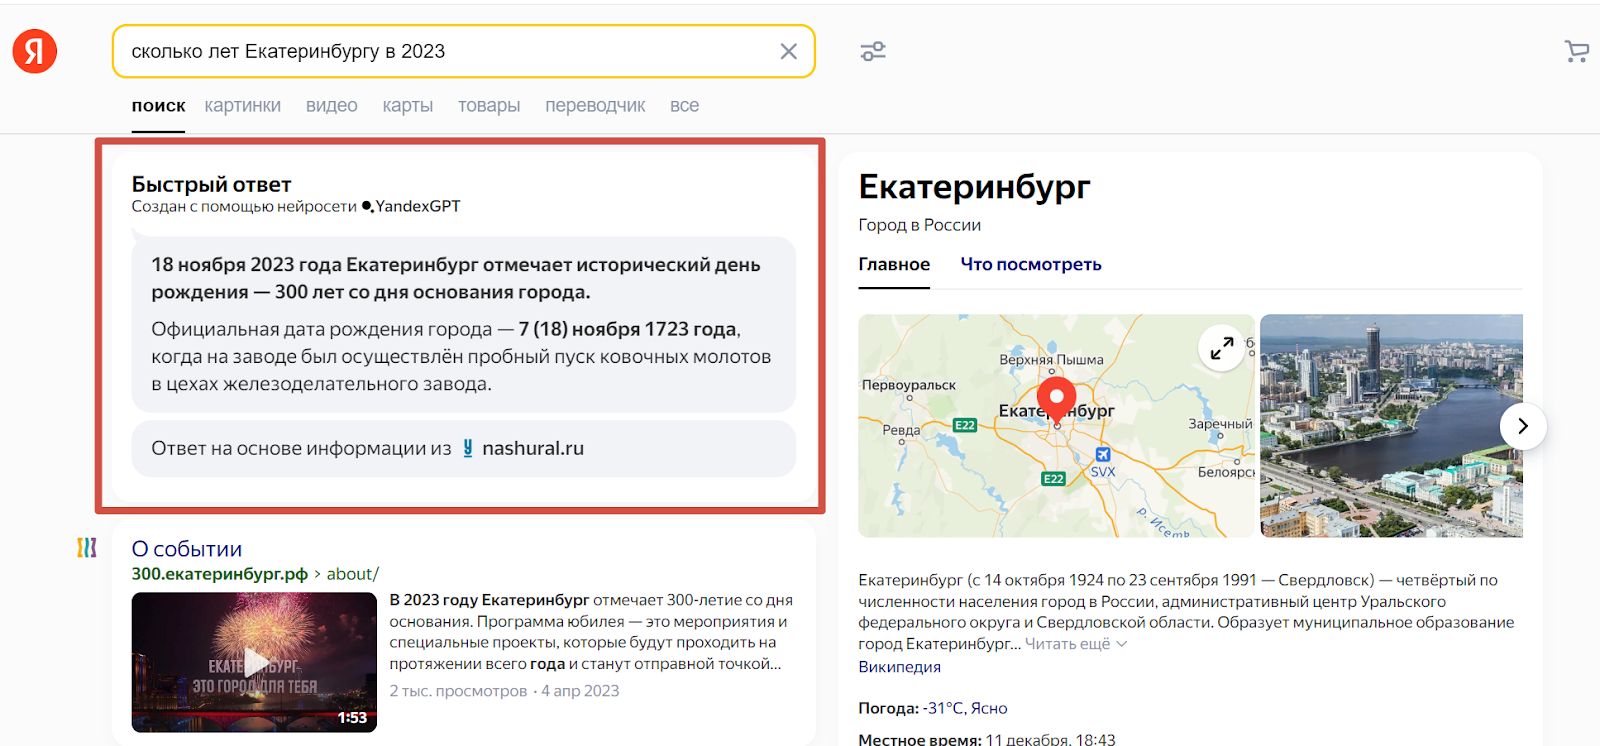 Как не заблудиться в Яндекс Вебмастере: инструкция по работе с сервисом